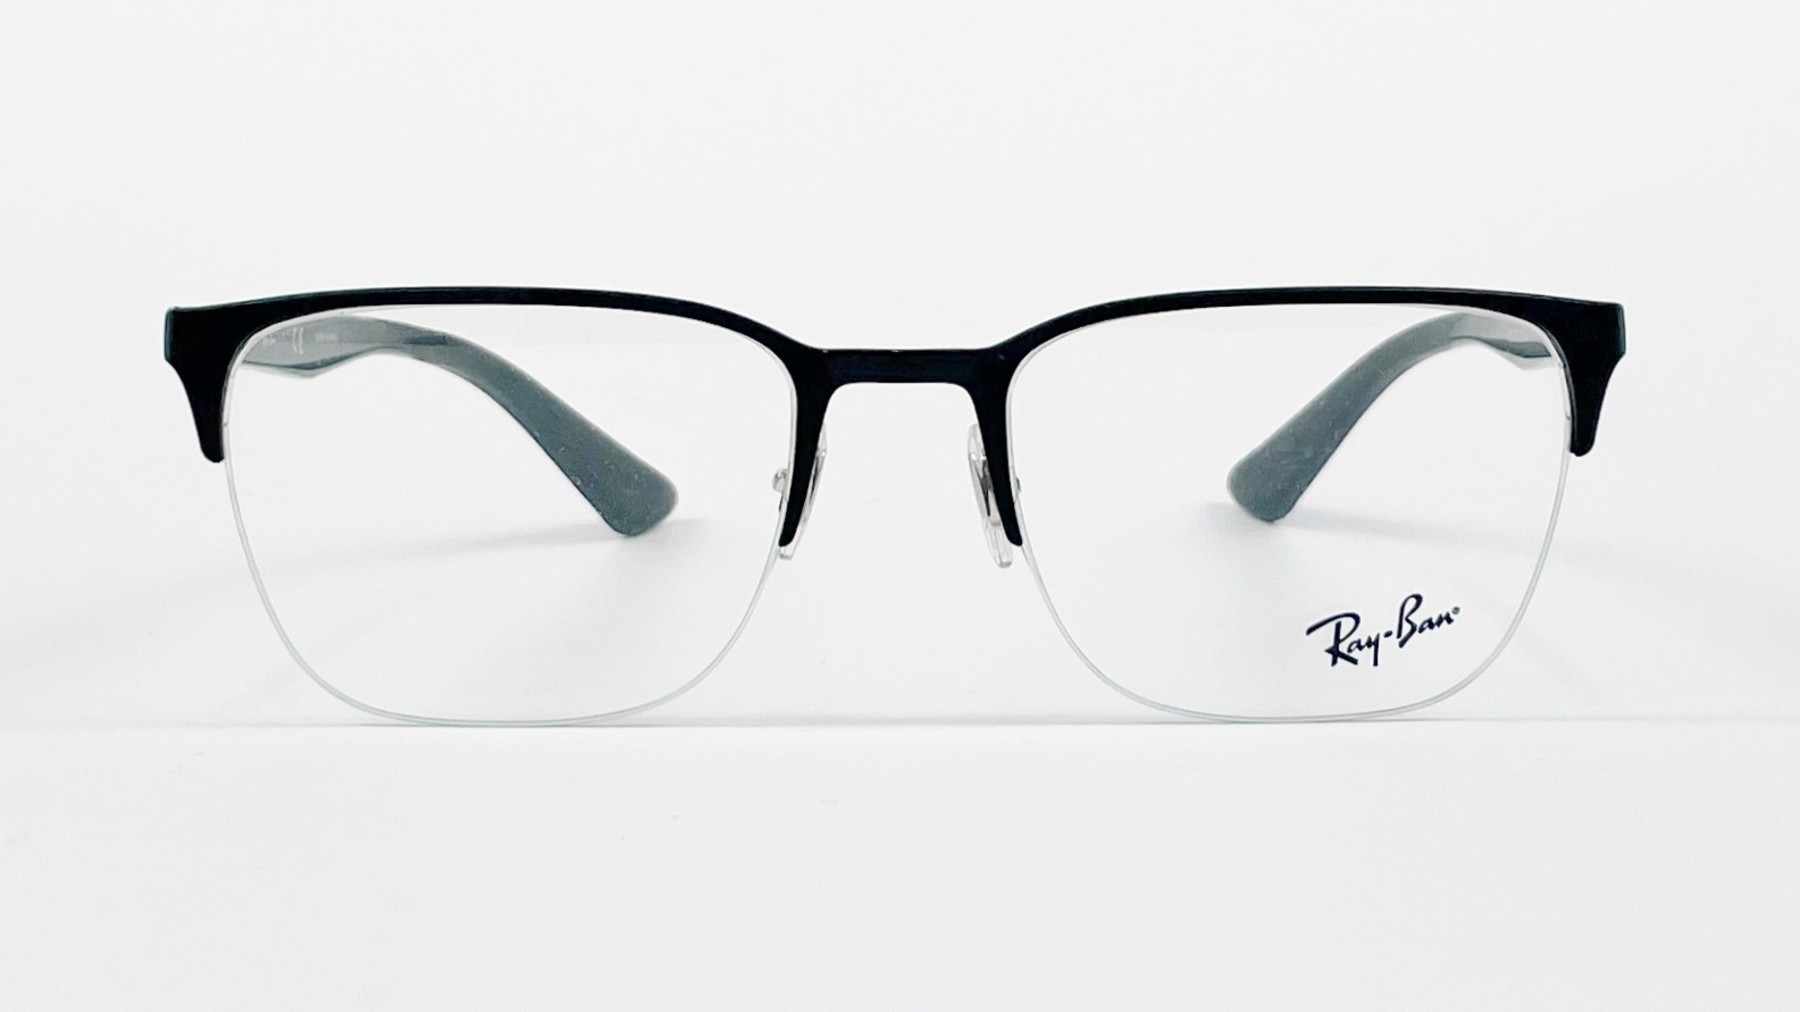 RayBan RB6428 2995, Korean glasses, sunglasses, eyeglasses, glasses